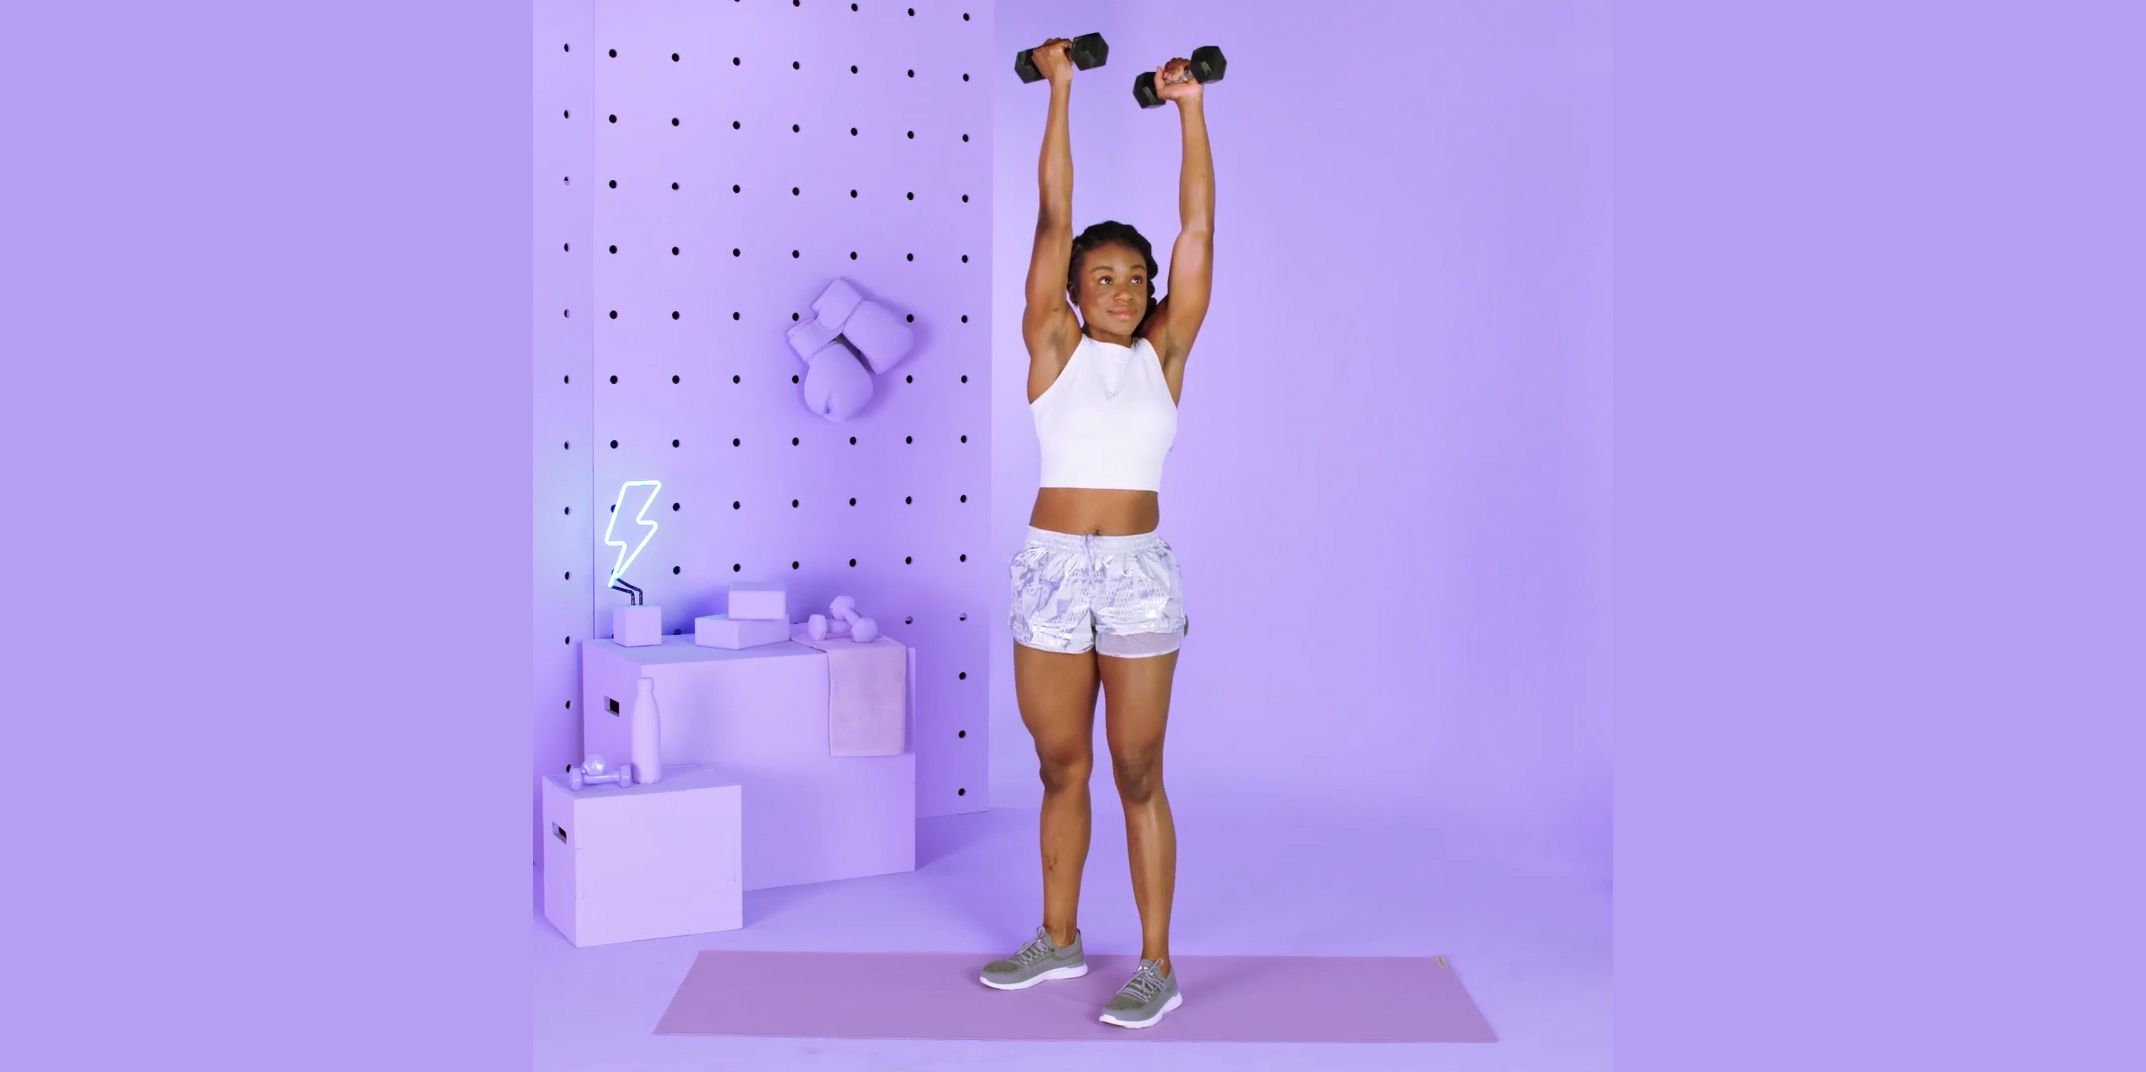 15 Best Dumbbell Exercises For A Full-Body Home Dumbbell Workout